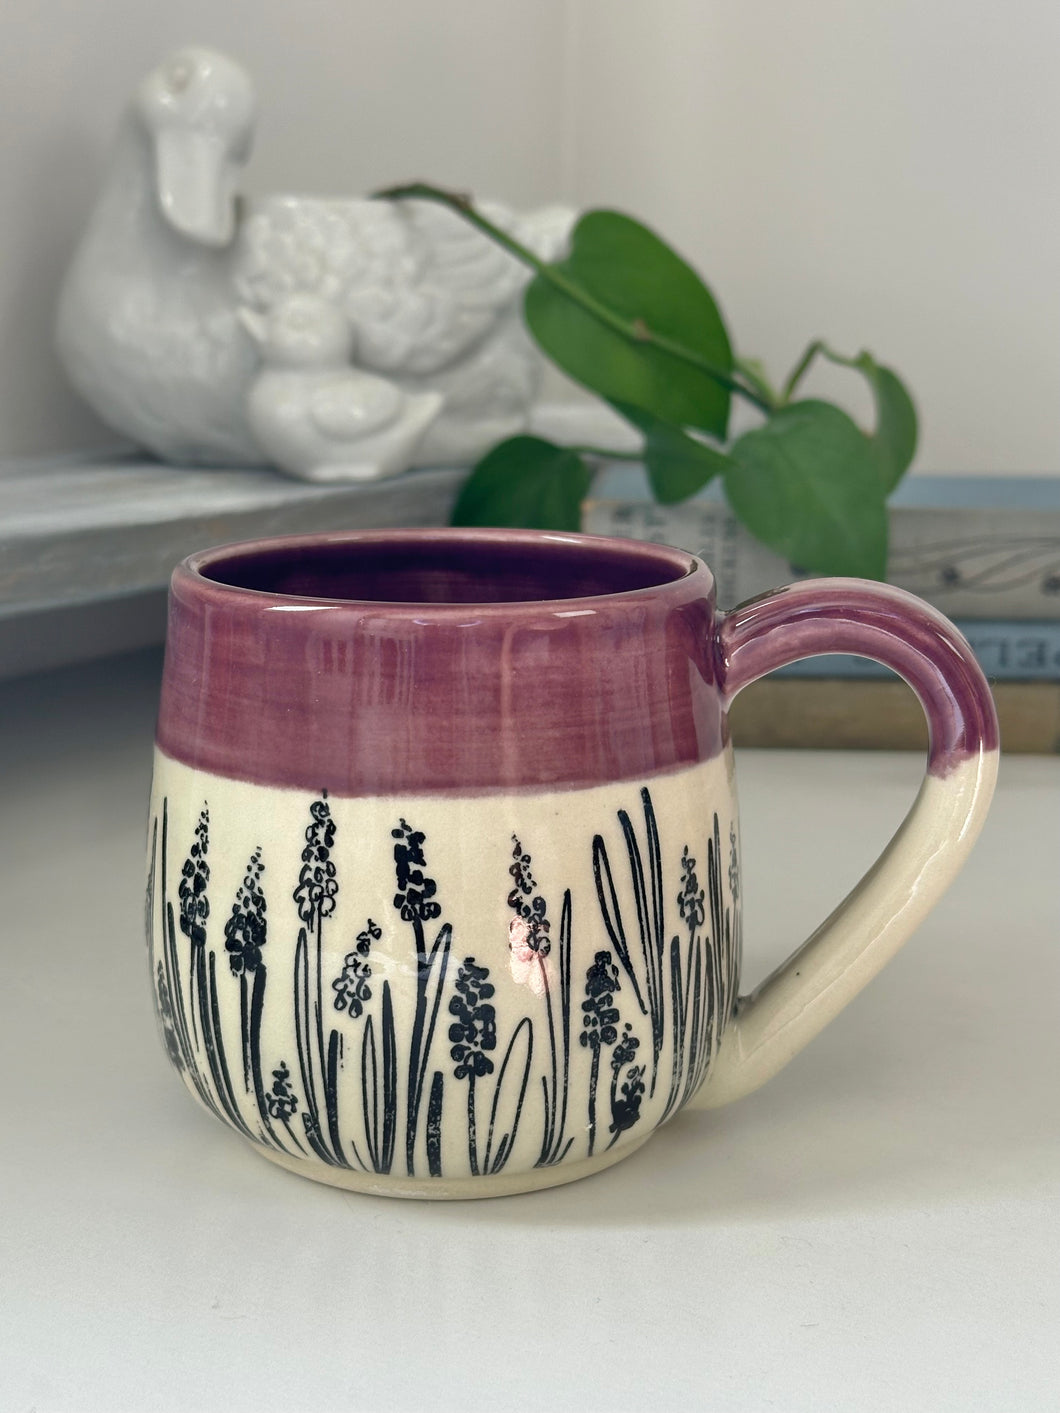 #007 - 16 oz. lavender mug with purple rim